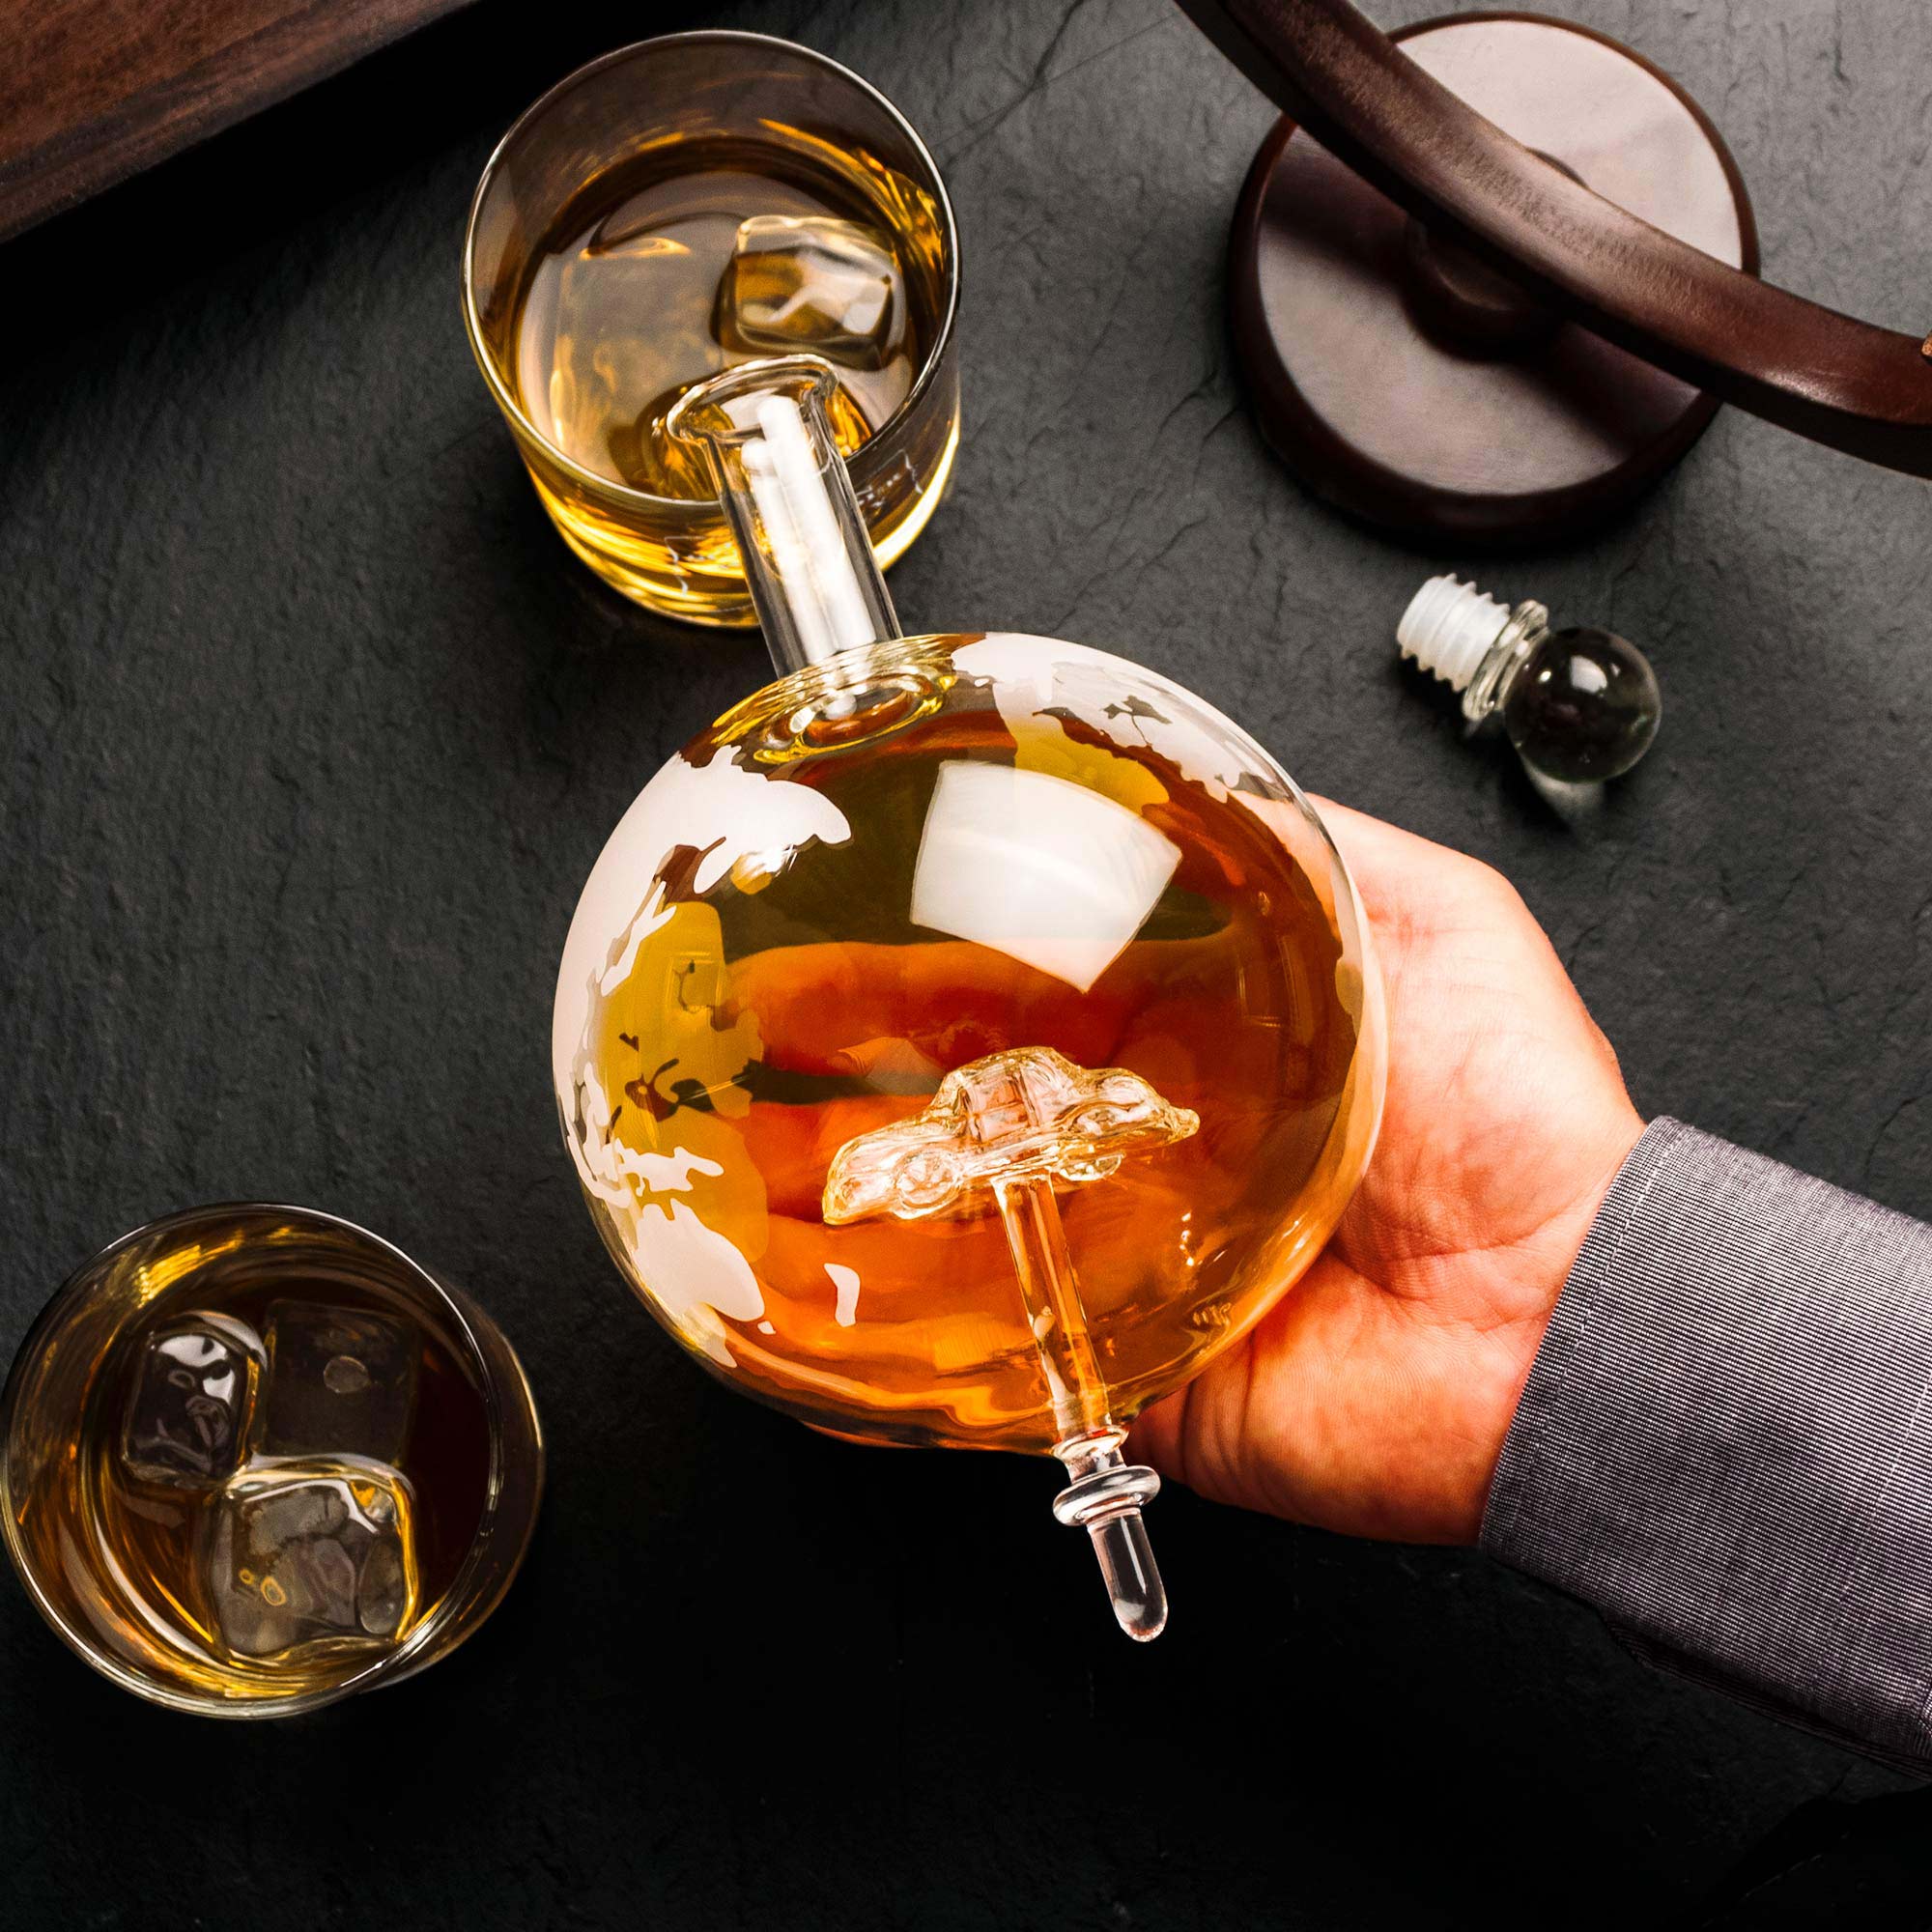 Whisky Set - Whisky Karaffe Globus mit Auto und Whiskyglas mit Gravur